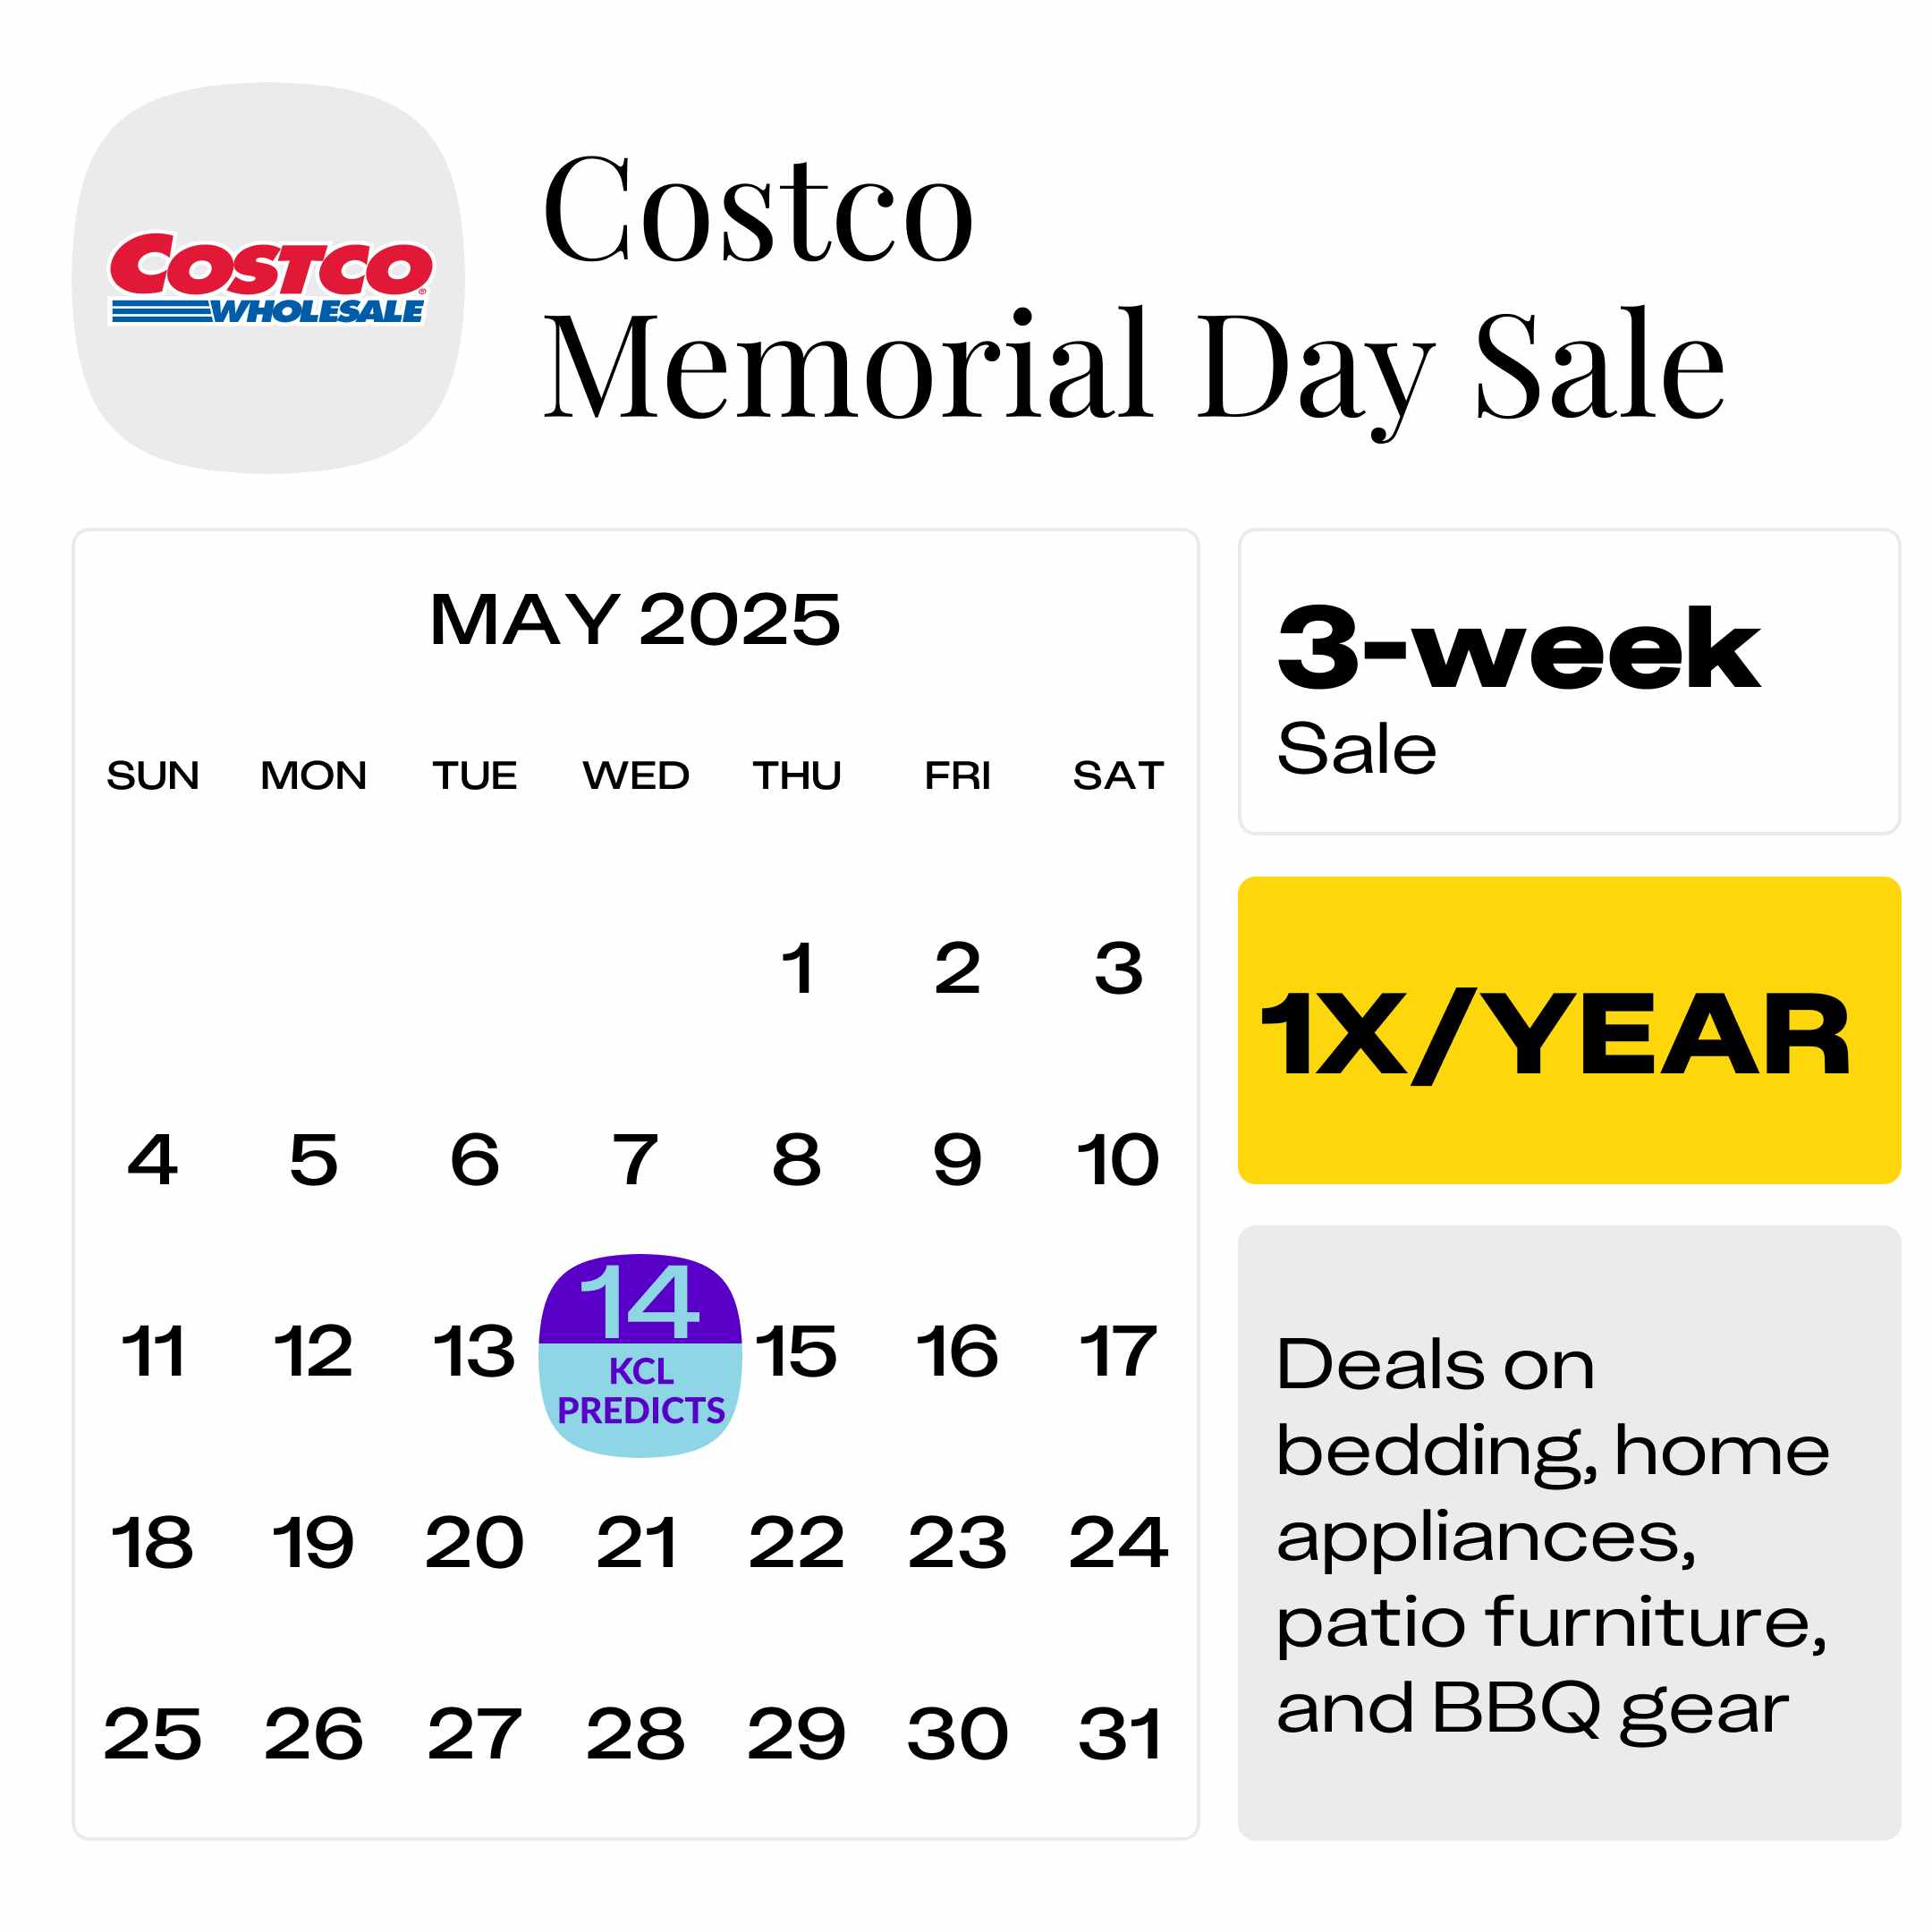 Costco-Memorial-Day-Sale